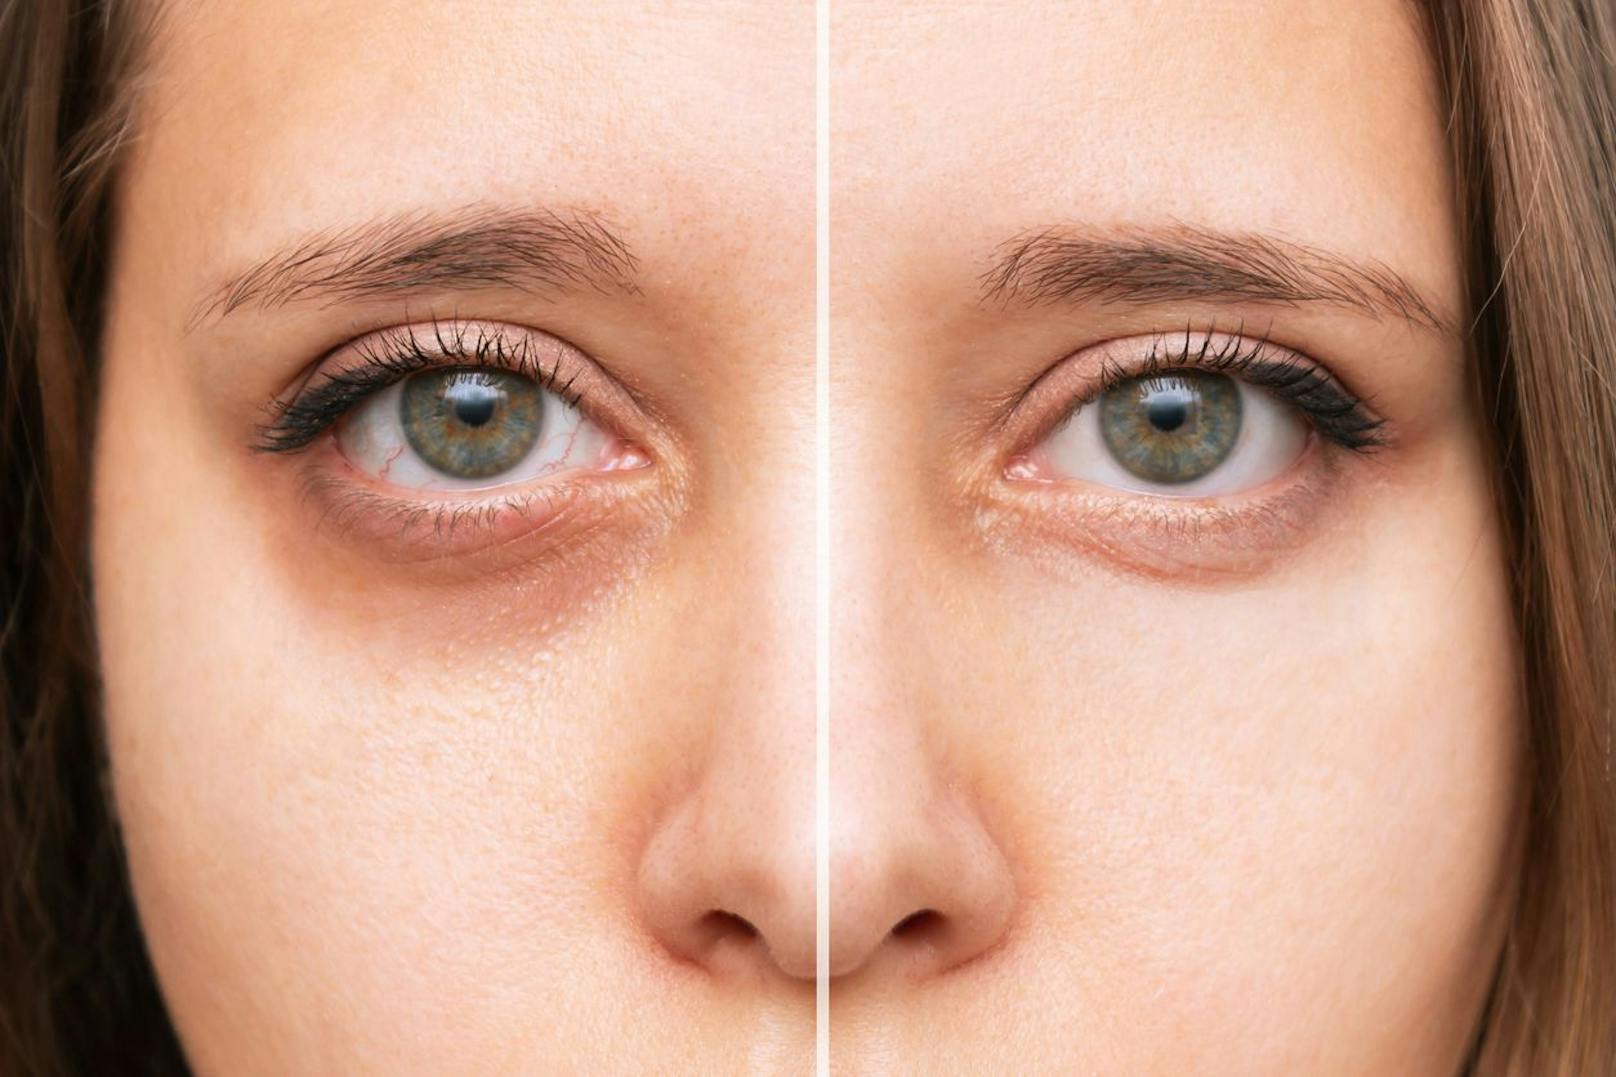 Wenn du kein Fan von Injektionen bist, dann kannst du mittels einer CC EYE-Behandlung deine dunklen Augenstellen aufhellen. Das geschieht in dem Farbpigmente auf deine Haut gerieben werden. Diese werden eingebracht und bewahren die Epidermis davor geschädigt zu werden.